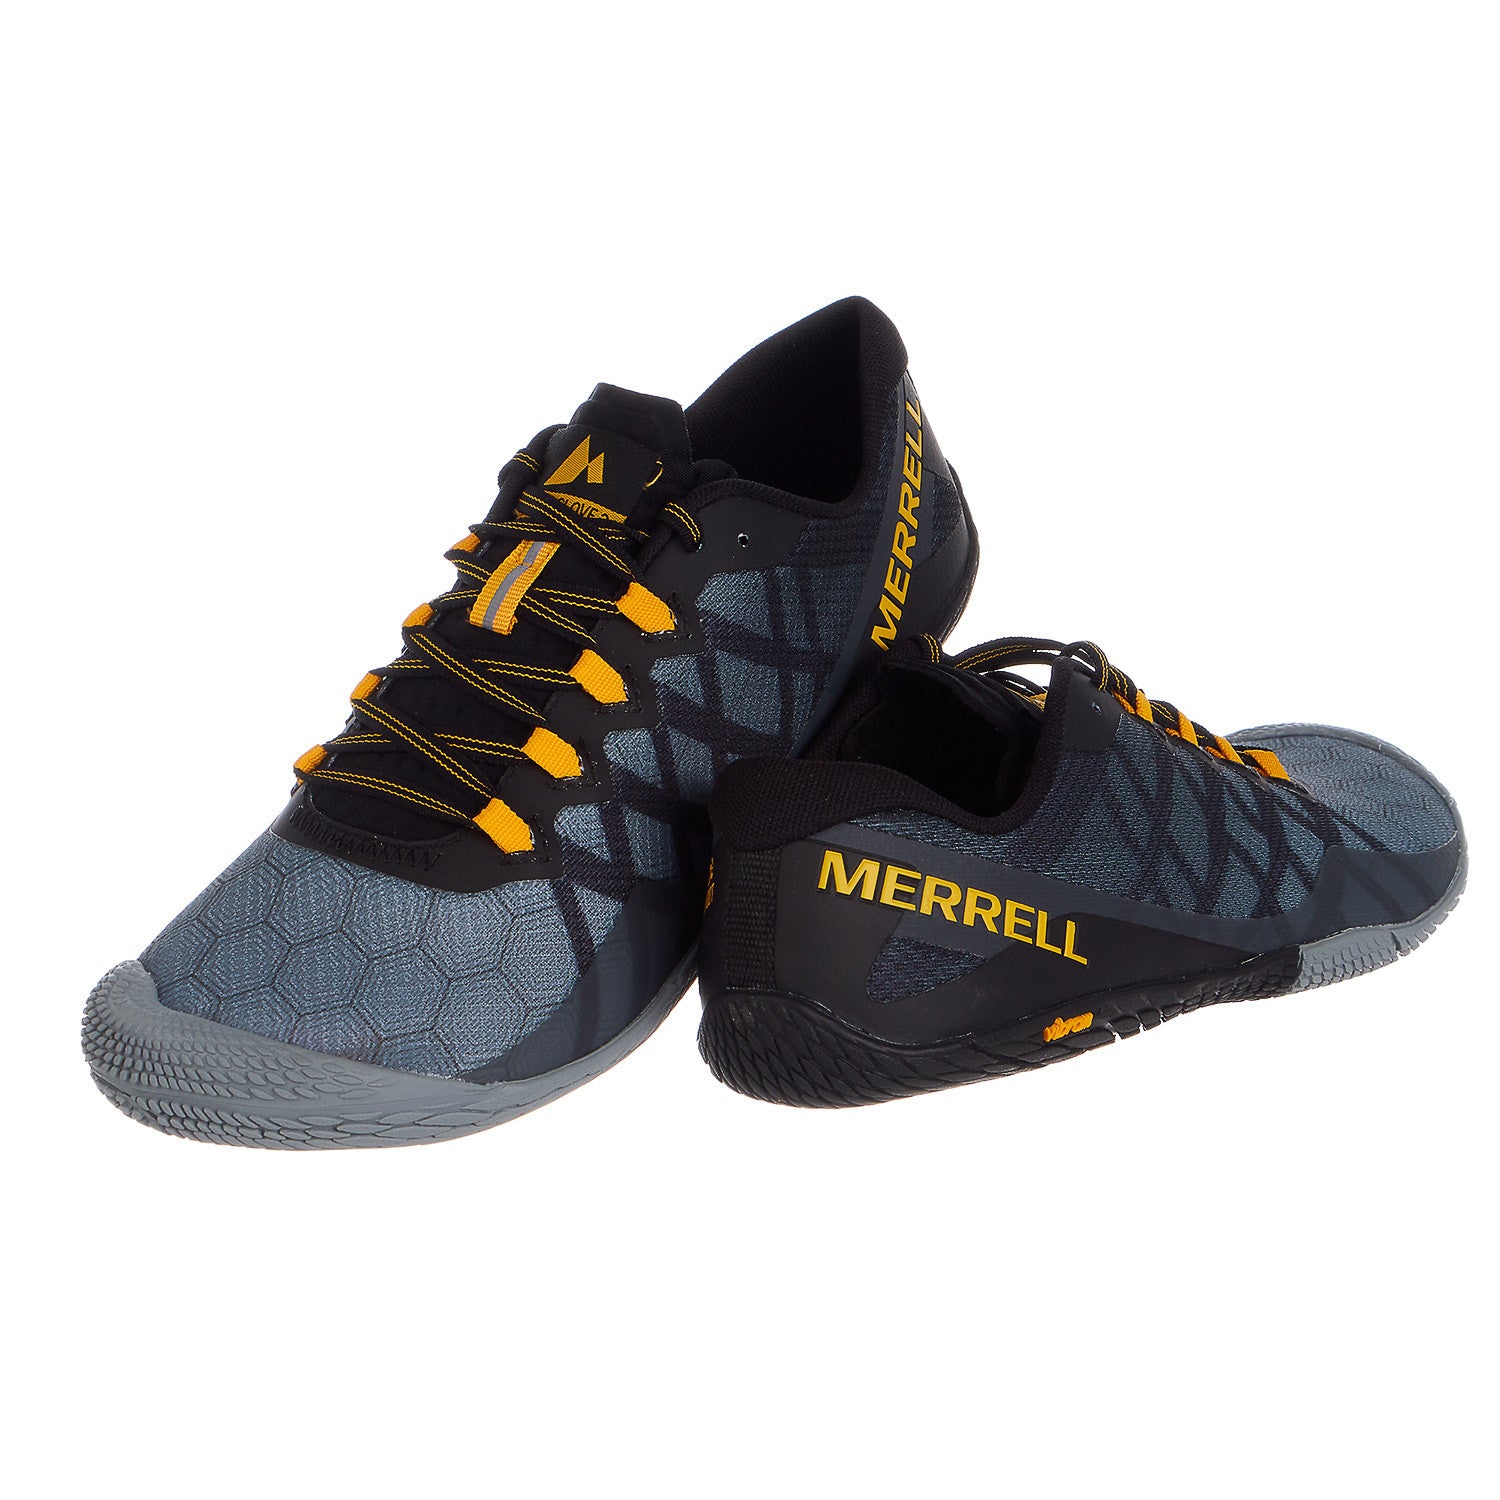 Merrell Vapor Glove 3 Trail Runner - Men's - Shoplifestyle